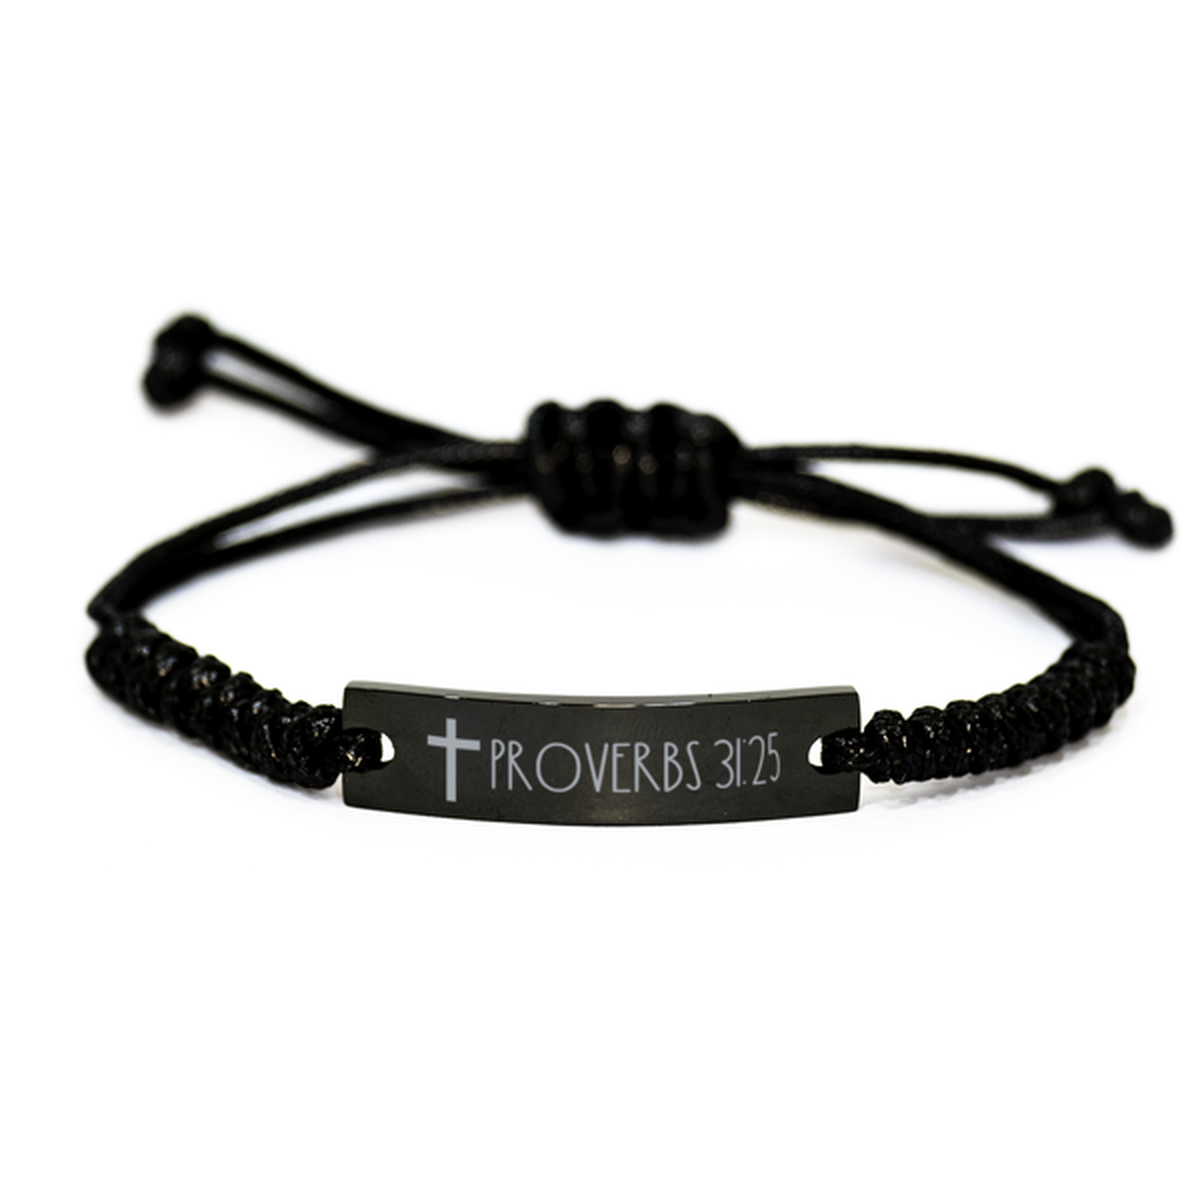 Bible Verse Bracelet, Proverbs 31 25 Bracelet, Christian Bracelet for Men Women, Black Braided Rope Bracelet, Birthday, Christmas Gift.